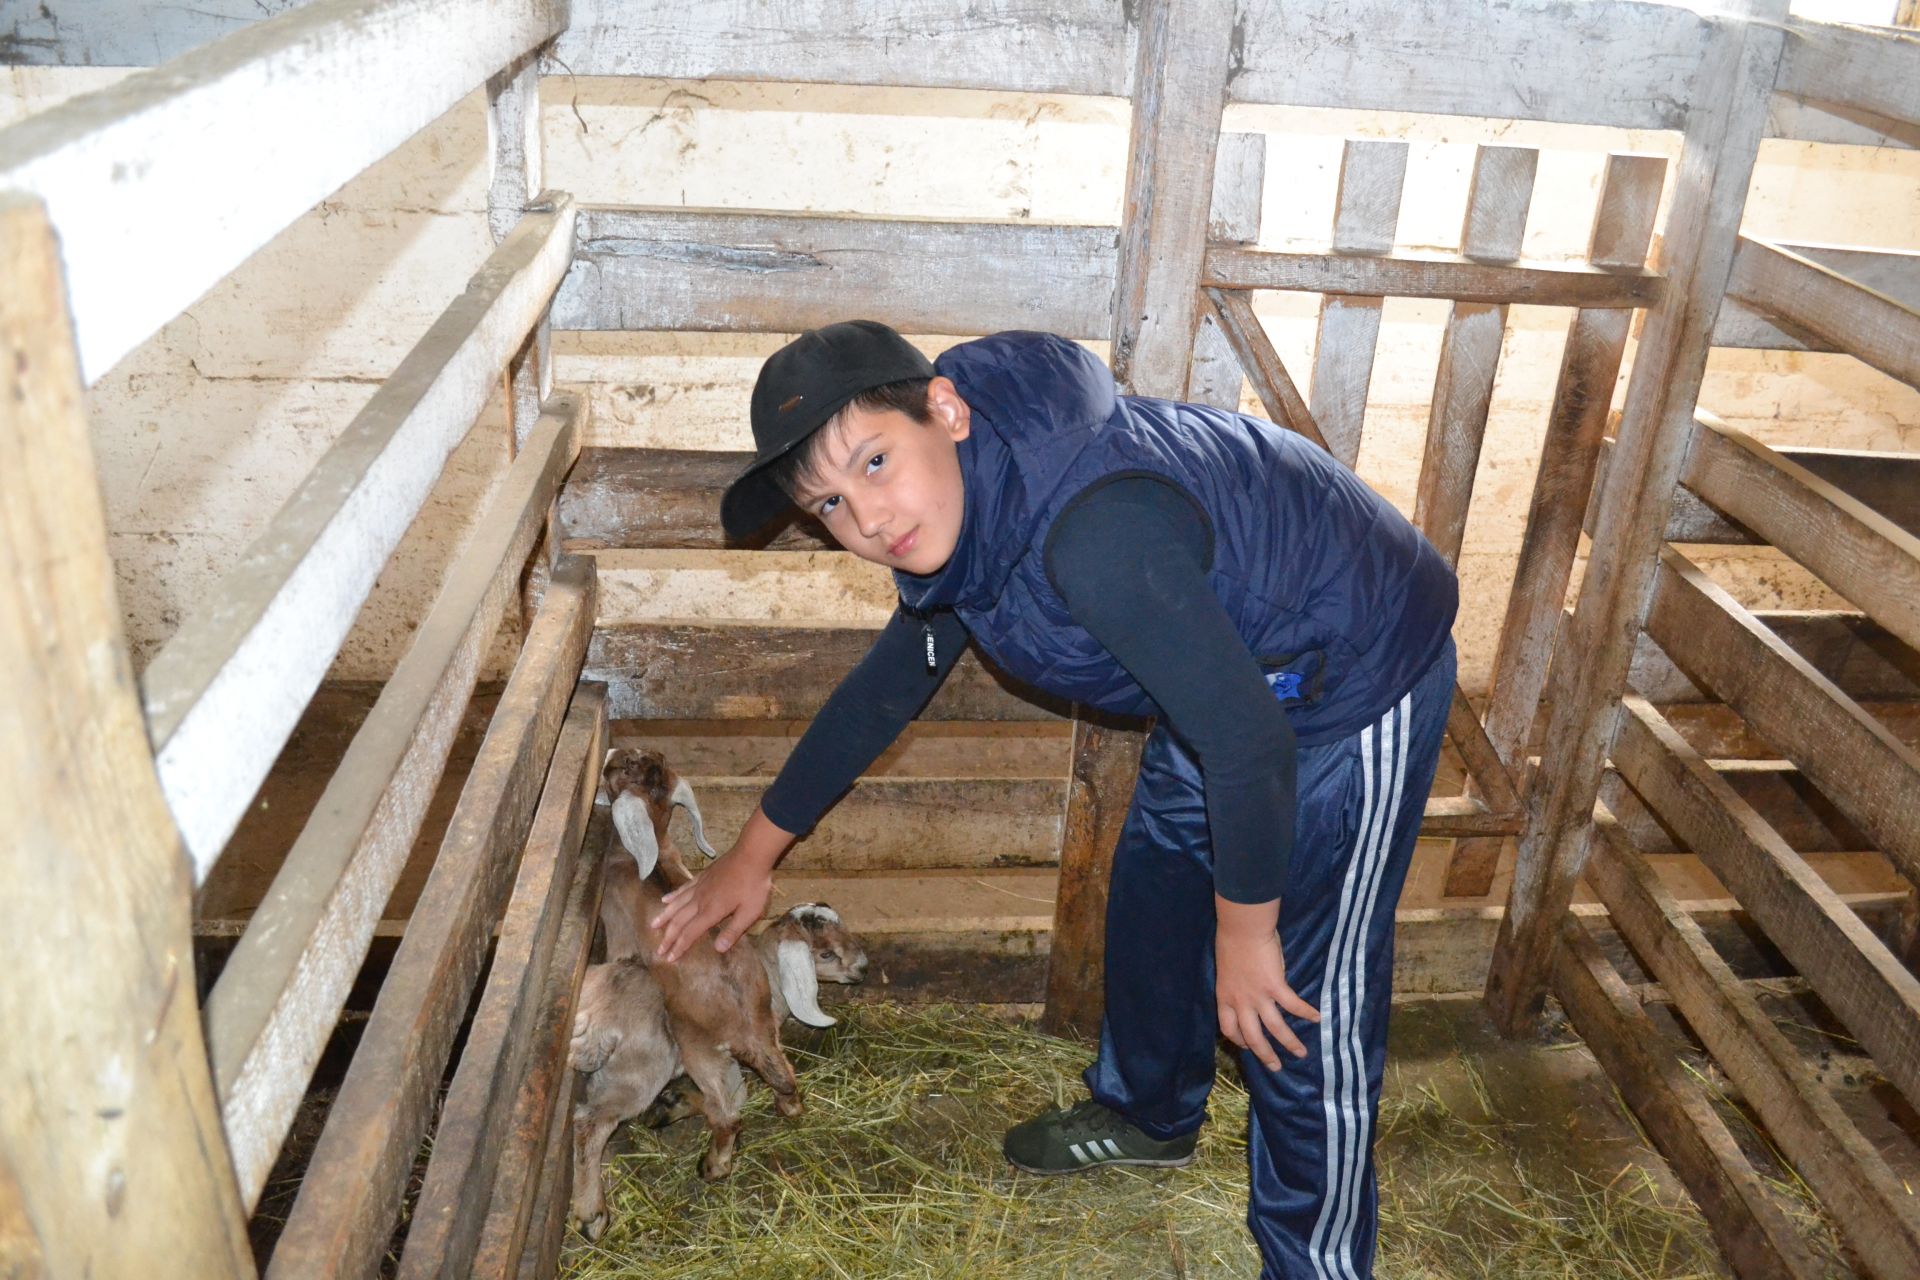 “Яшь имәннәр” лагеренда ял итүче балалар Нина Агапованың кәҗә фермасында экскурсиядә булдылар.